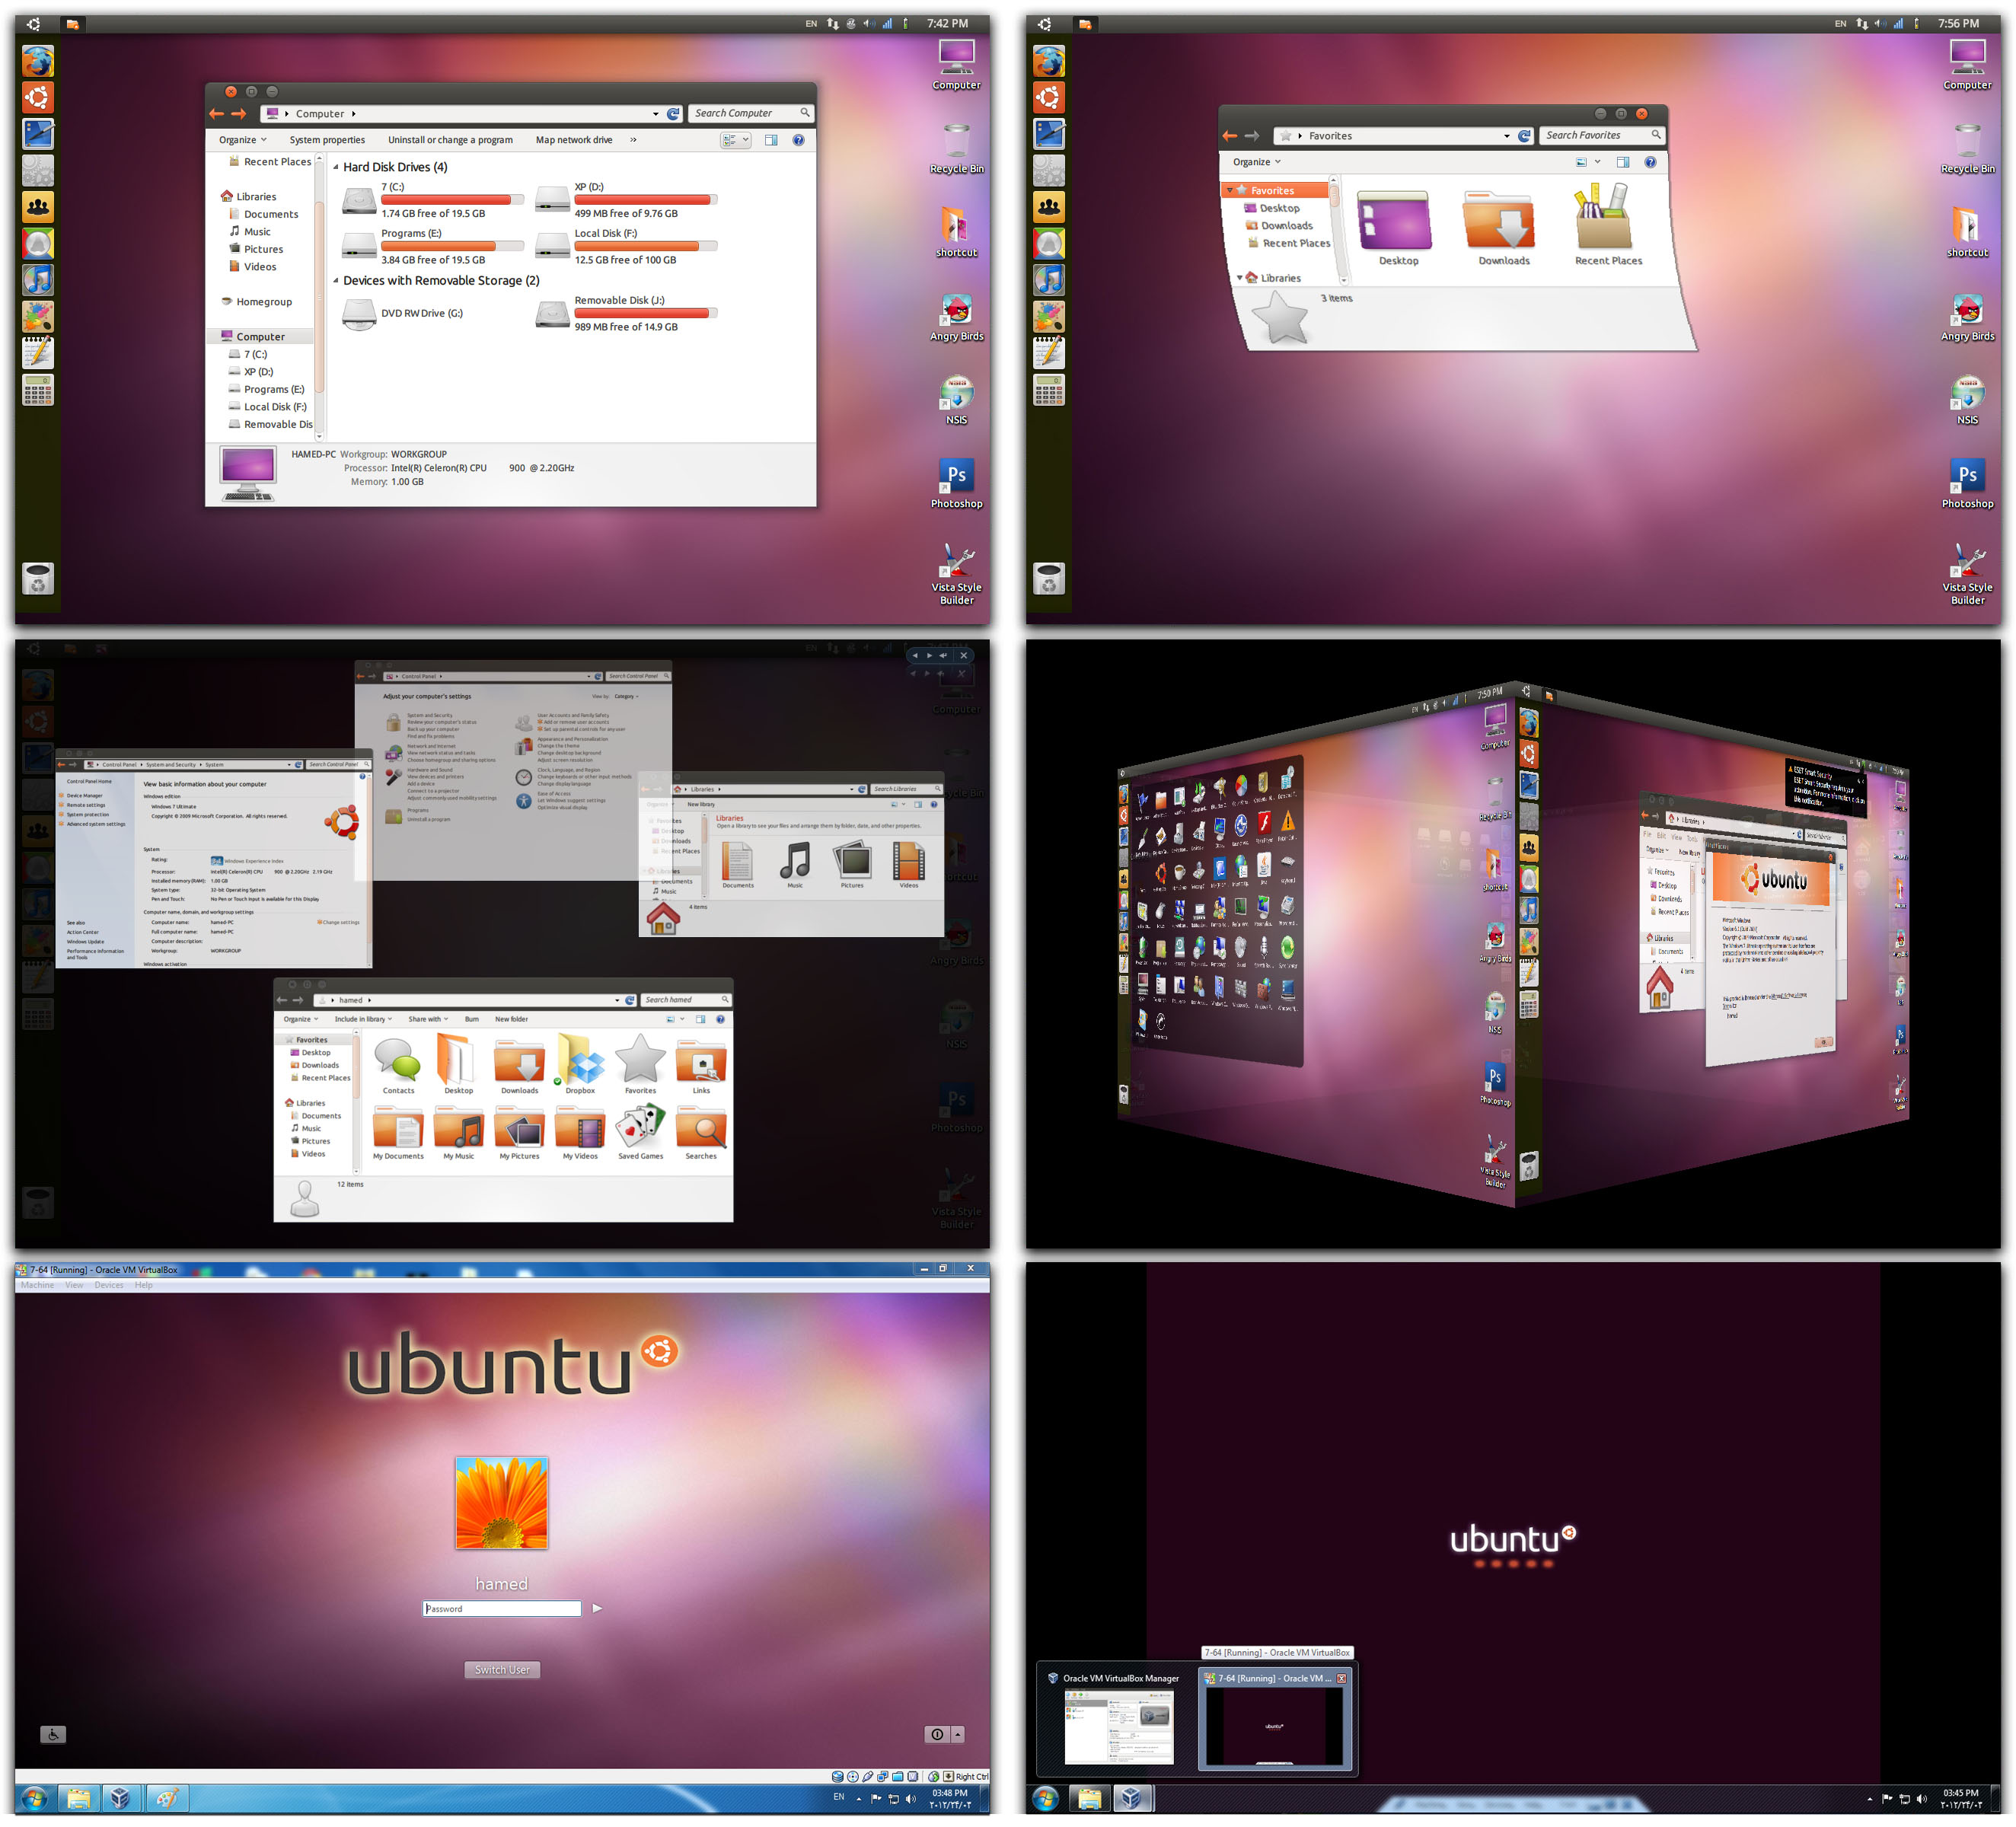 ubuntu_by_spdownload-d4u68my.jpg